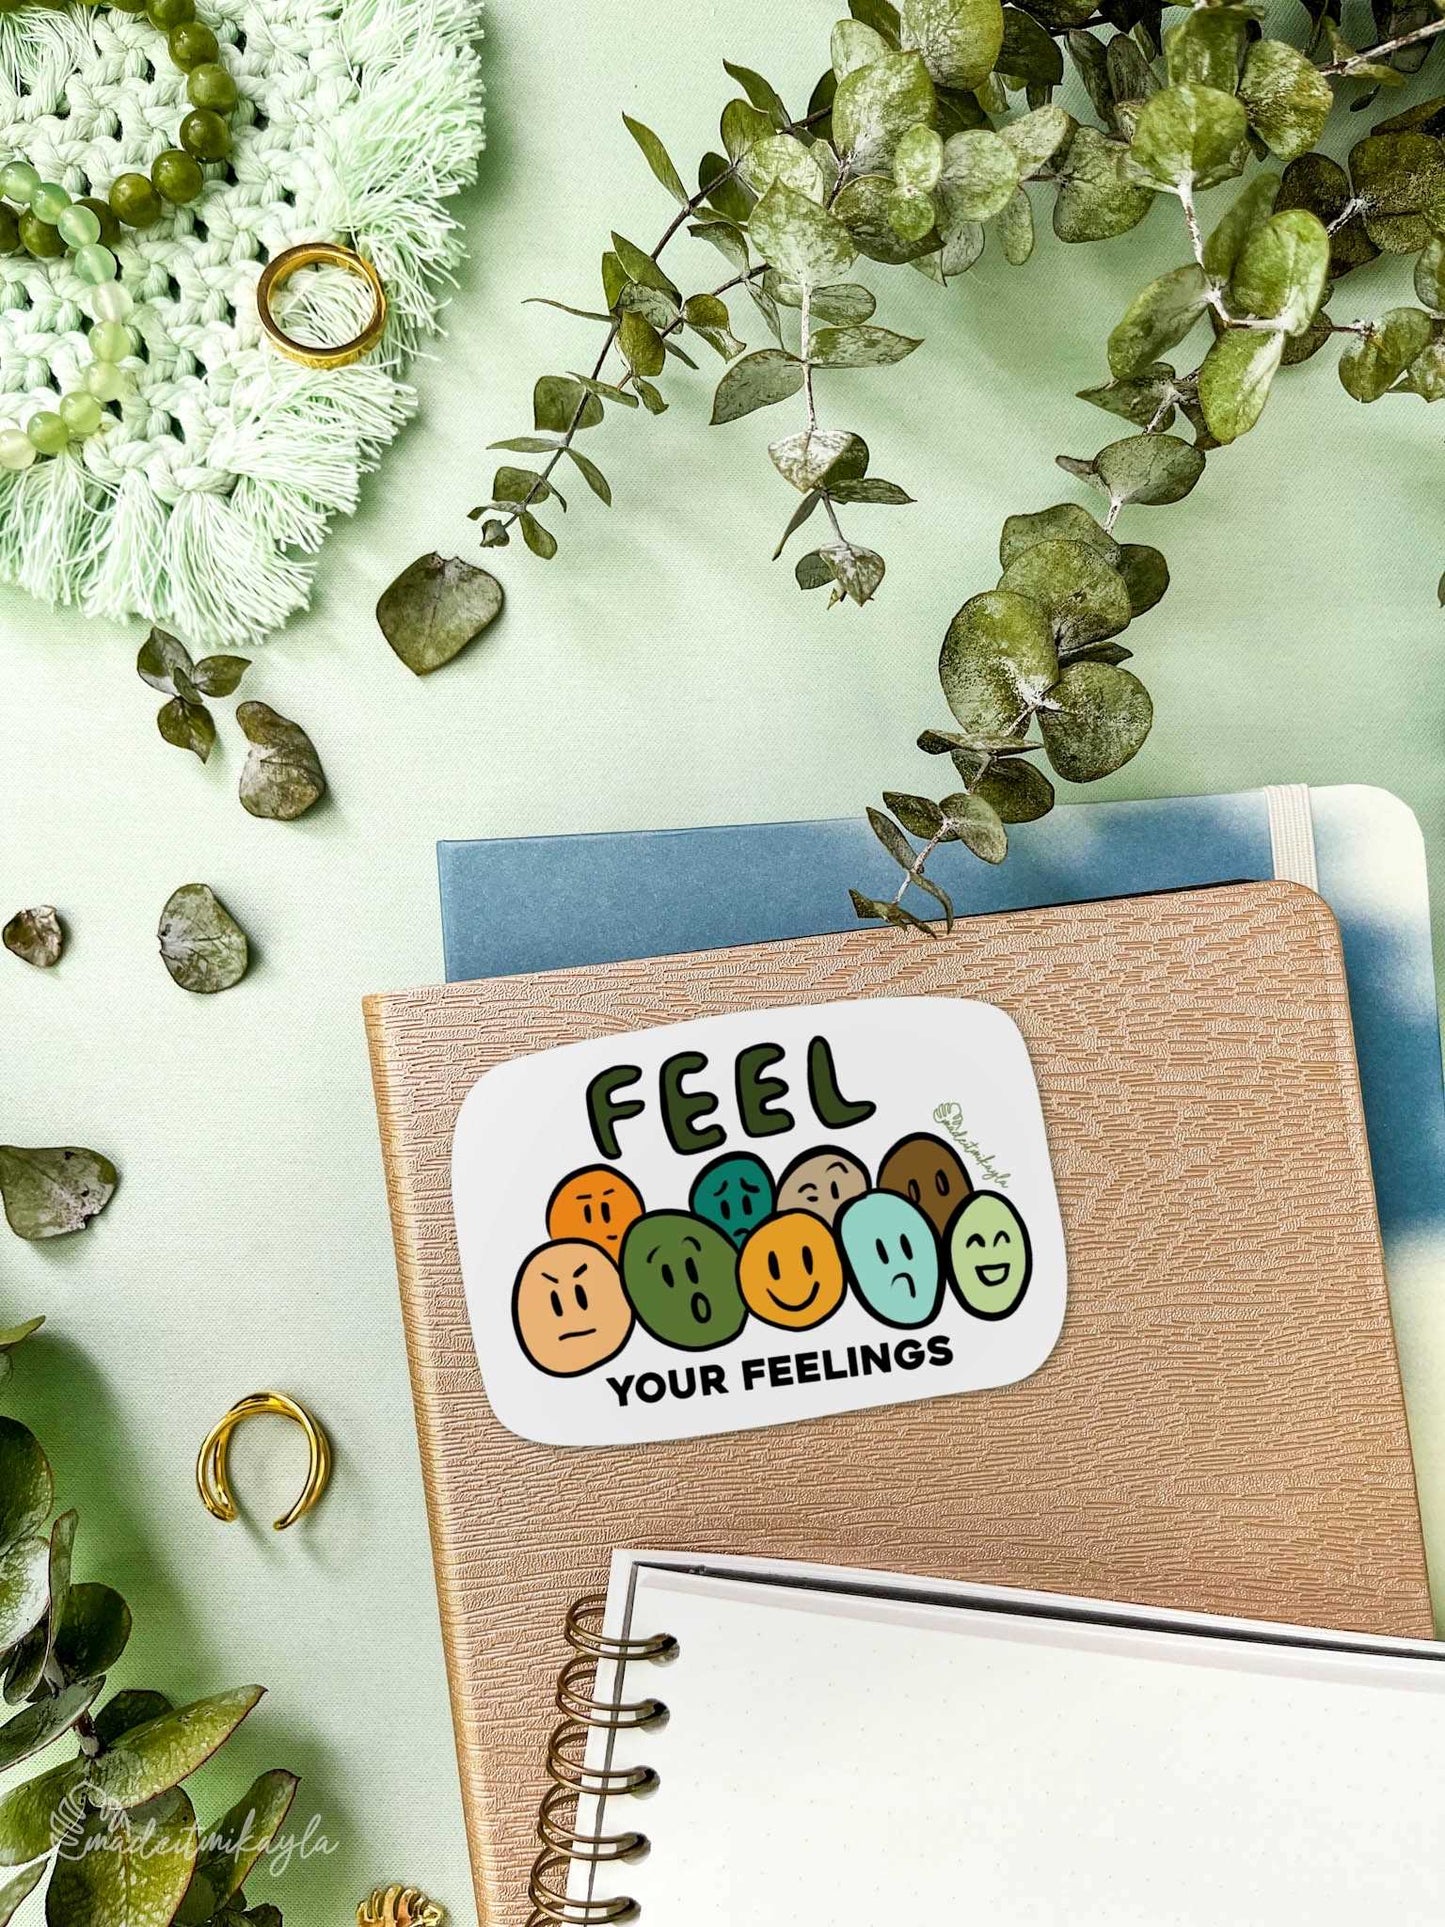 Feel Your Feelings Sticker